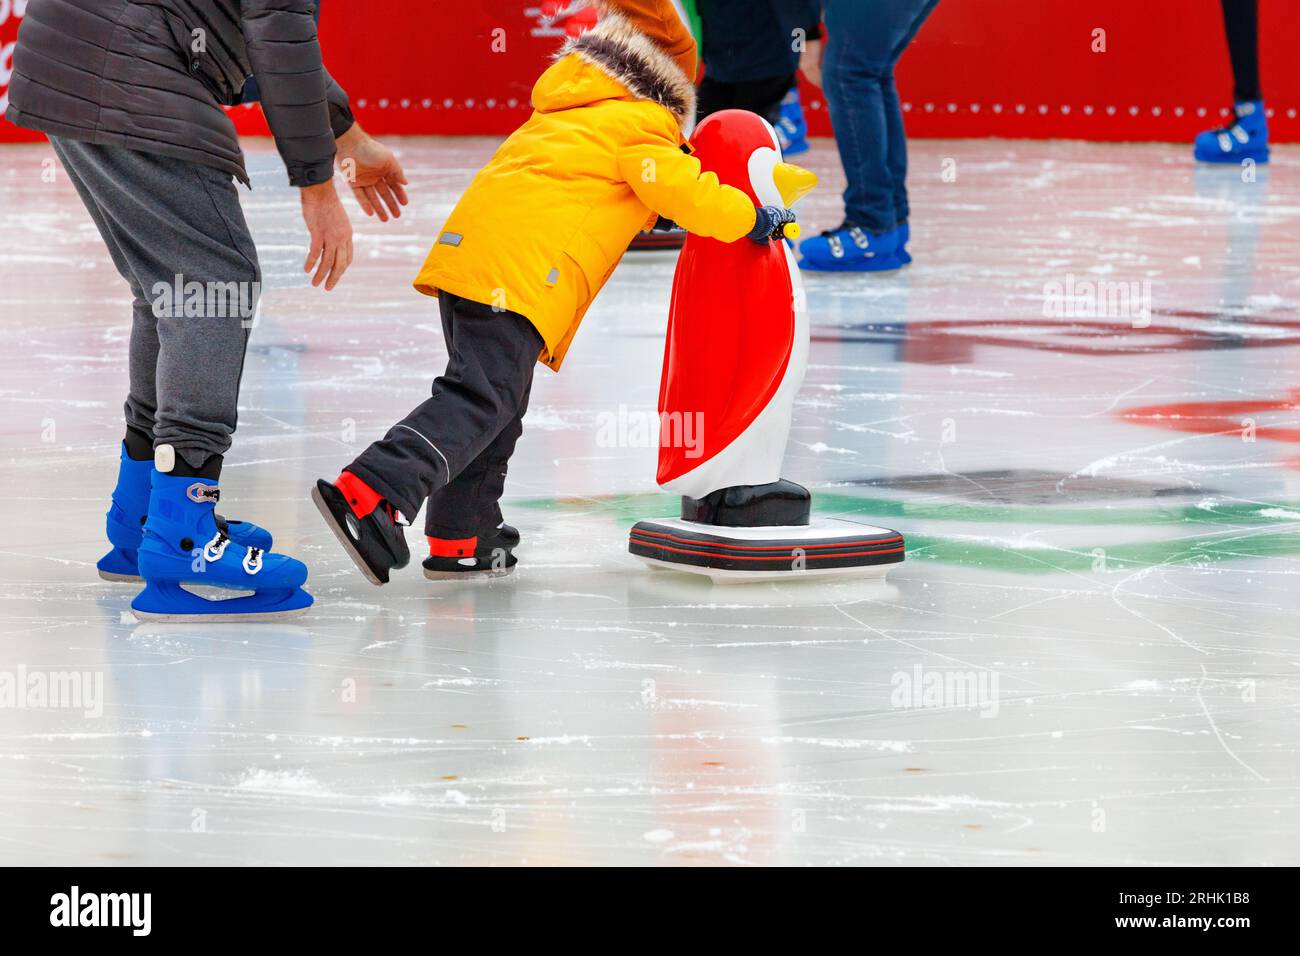 Ein Kind, begleitet von einem Erwachsenen, lernt auf einer Eislaufbahn Schlittschuh zu laufen und hält an einem Assistenten, einem Spielzeugpinguin, fest. Stockfoto